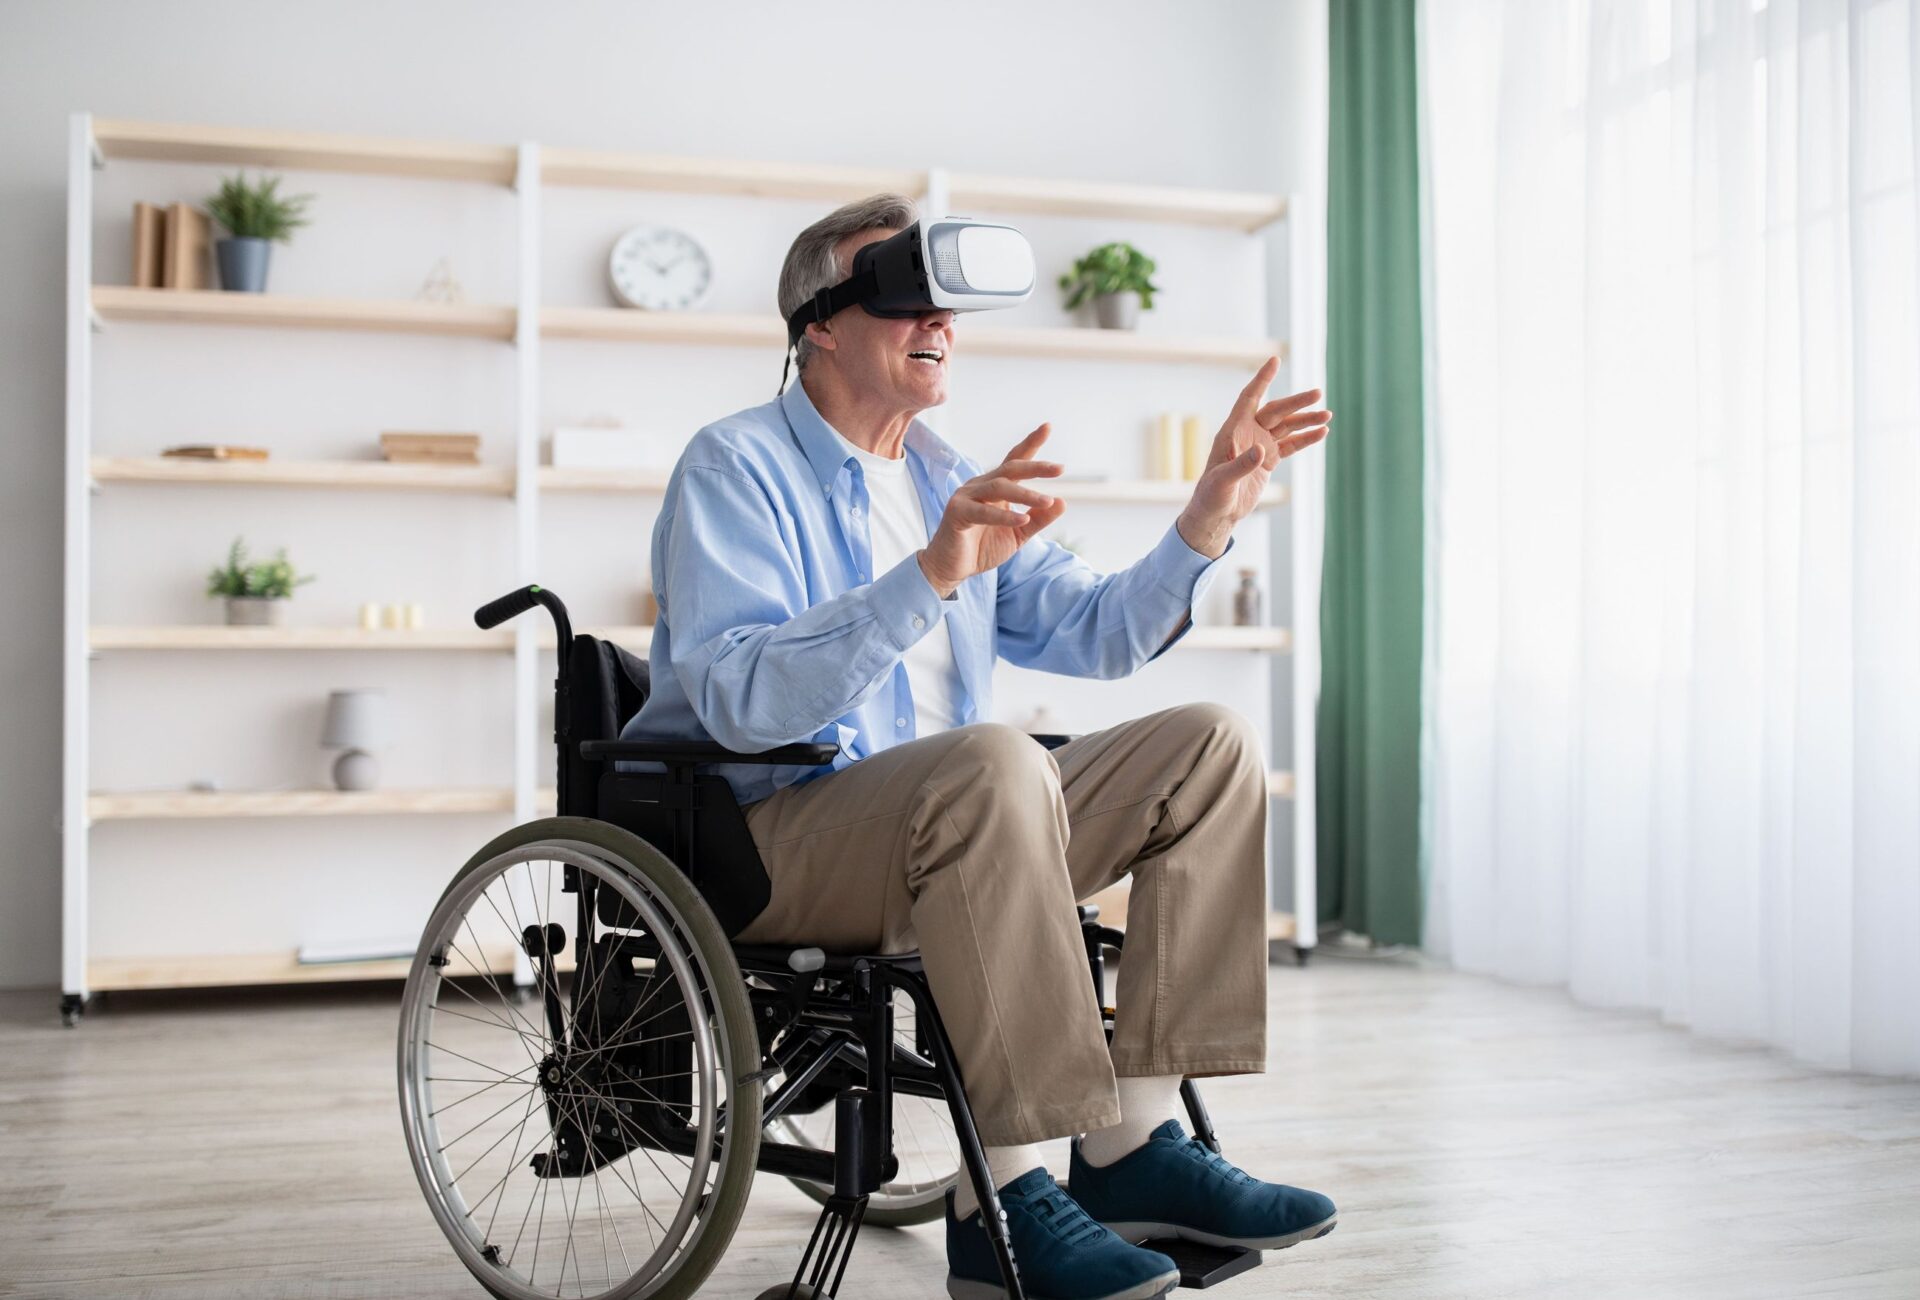 VR in healthcare